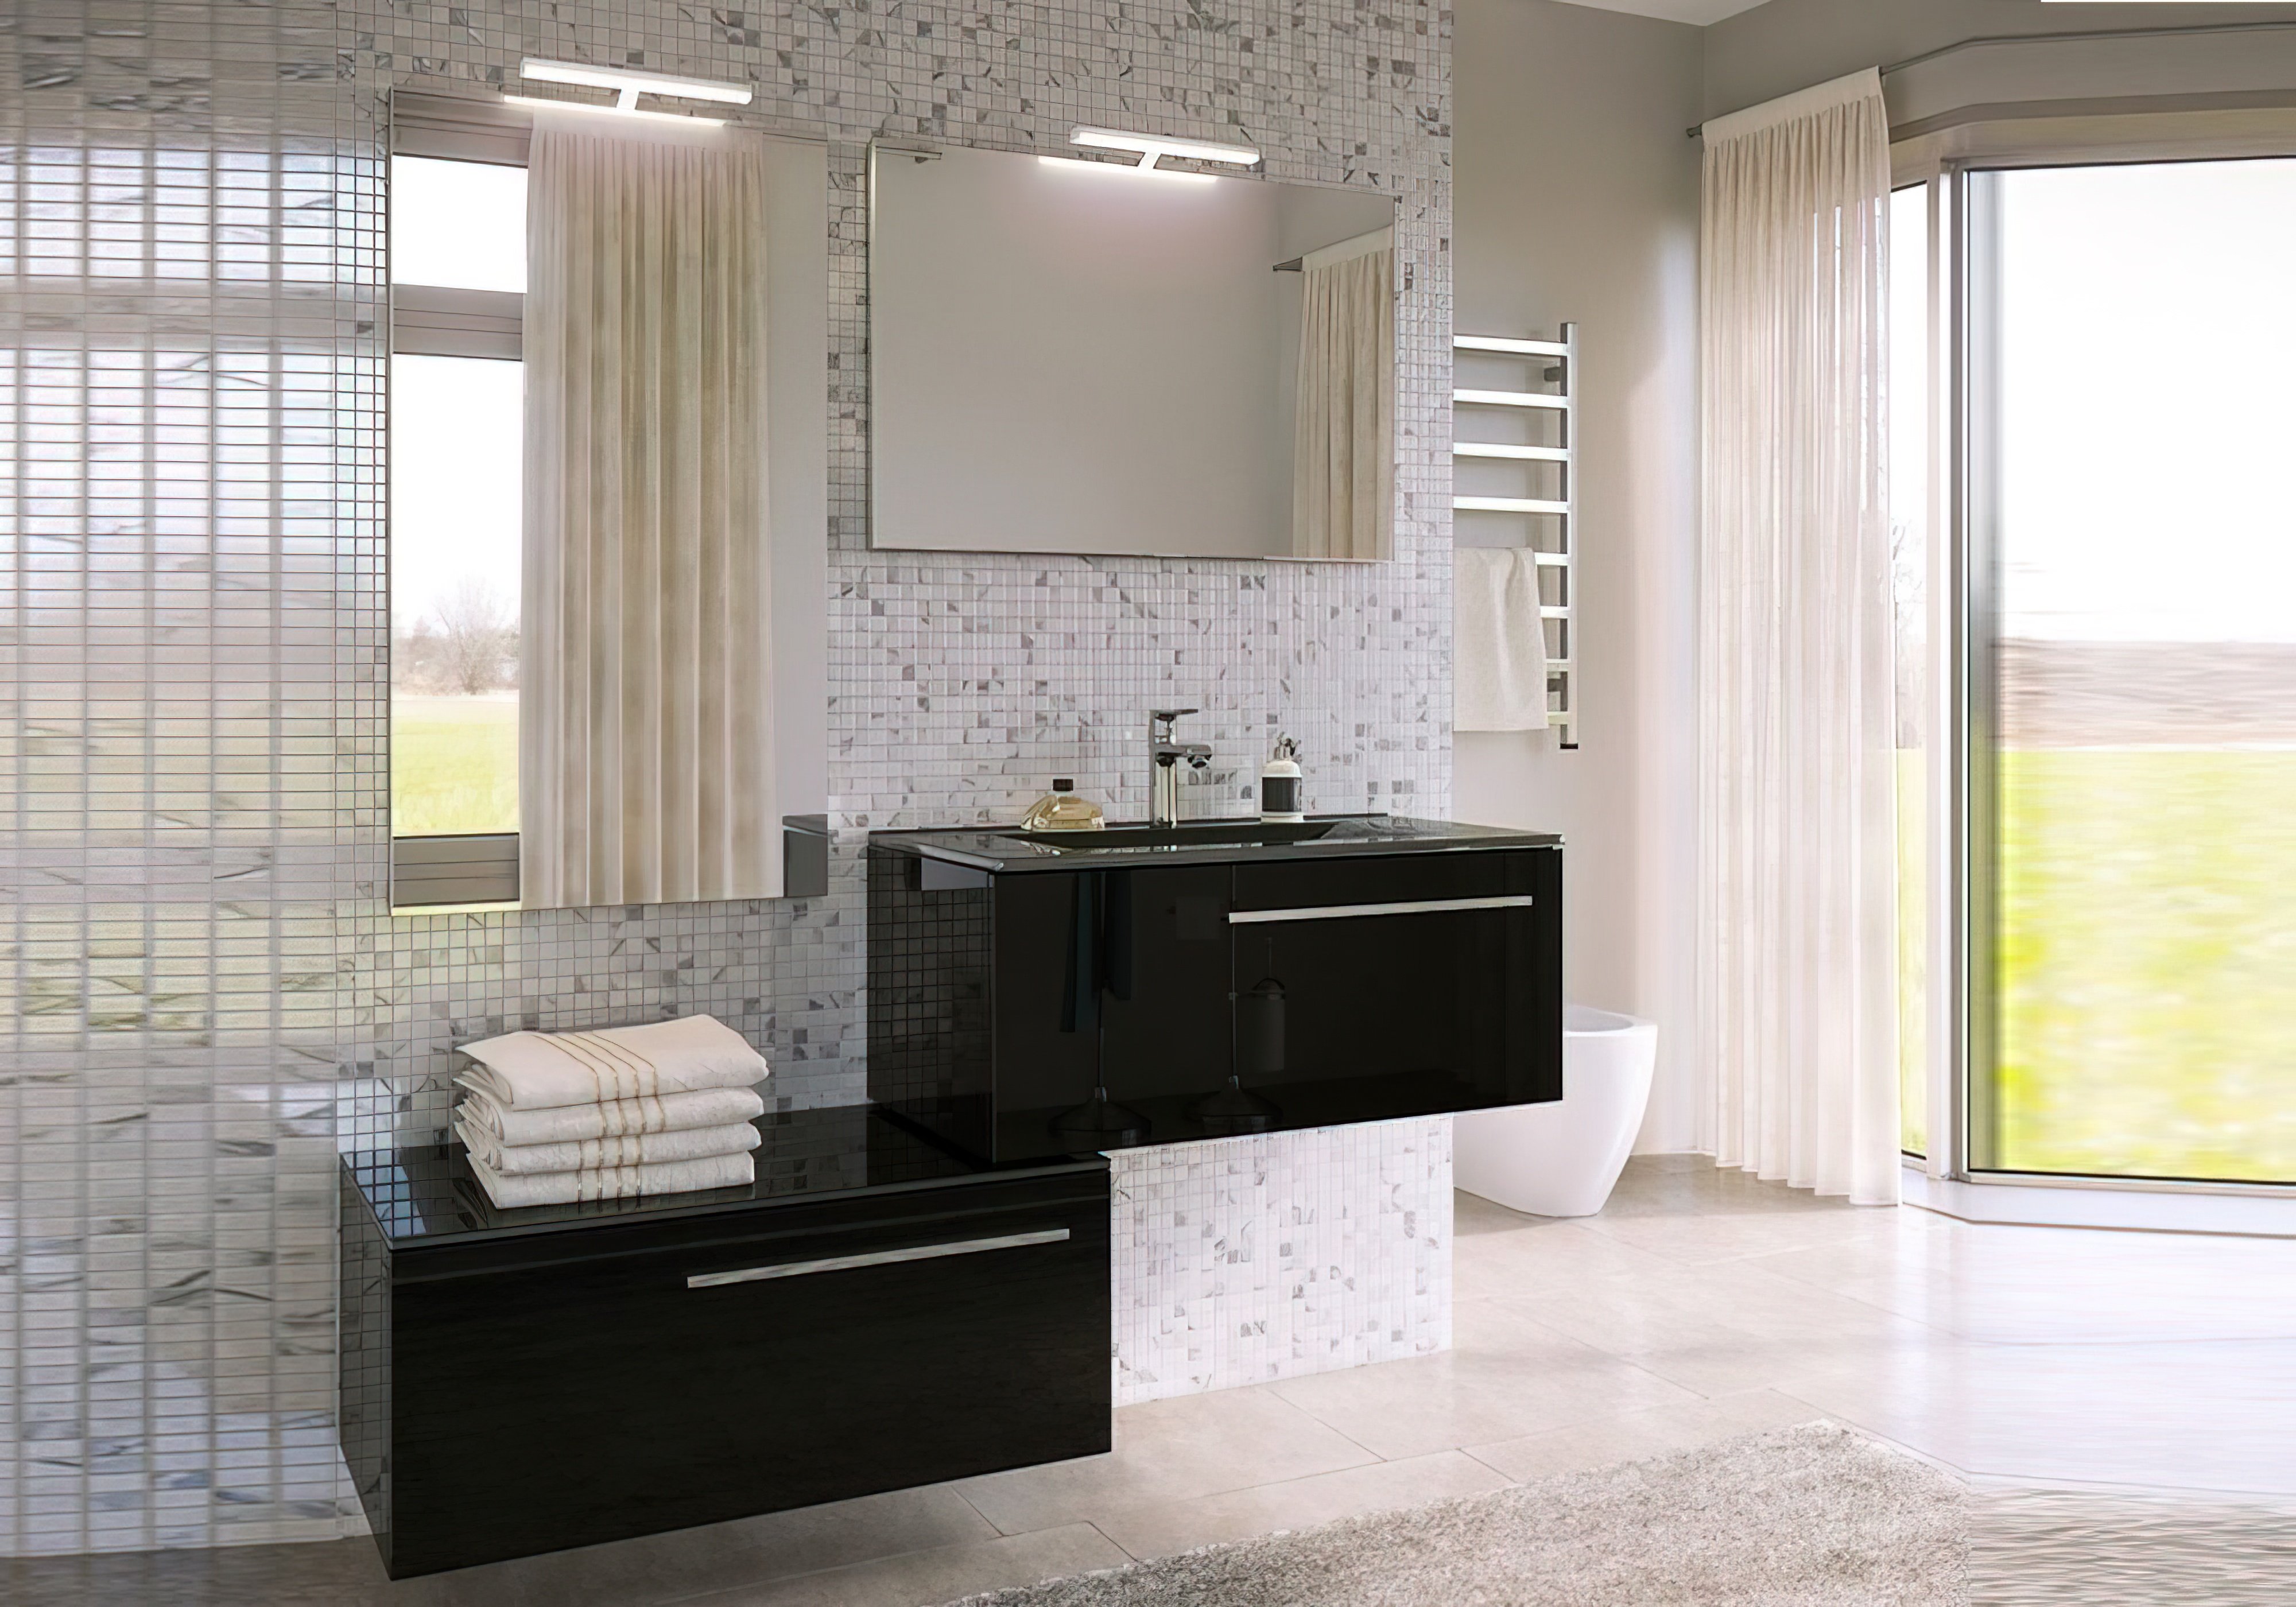  Купить Мебель для ванной комнаты Комплект мебели для ванной "Oskar-2" Marsan